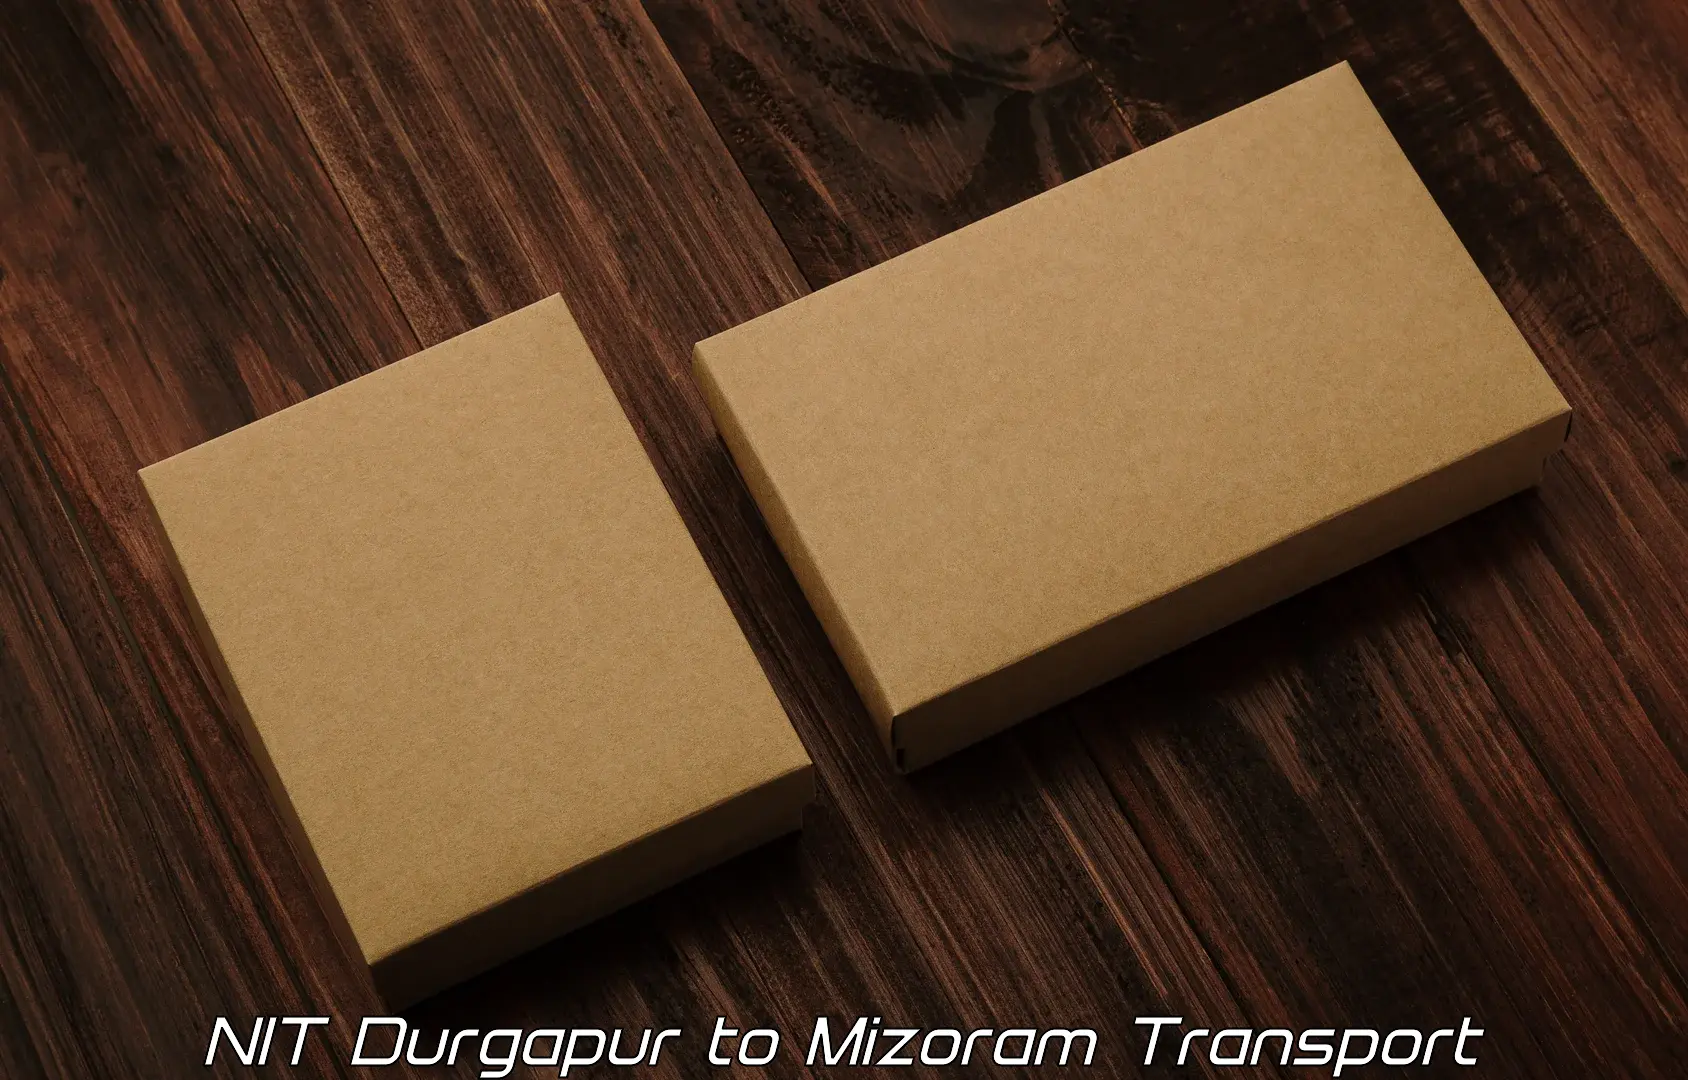 Air cargo transport services NIT Durgapur to Mizoram